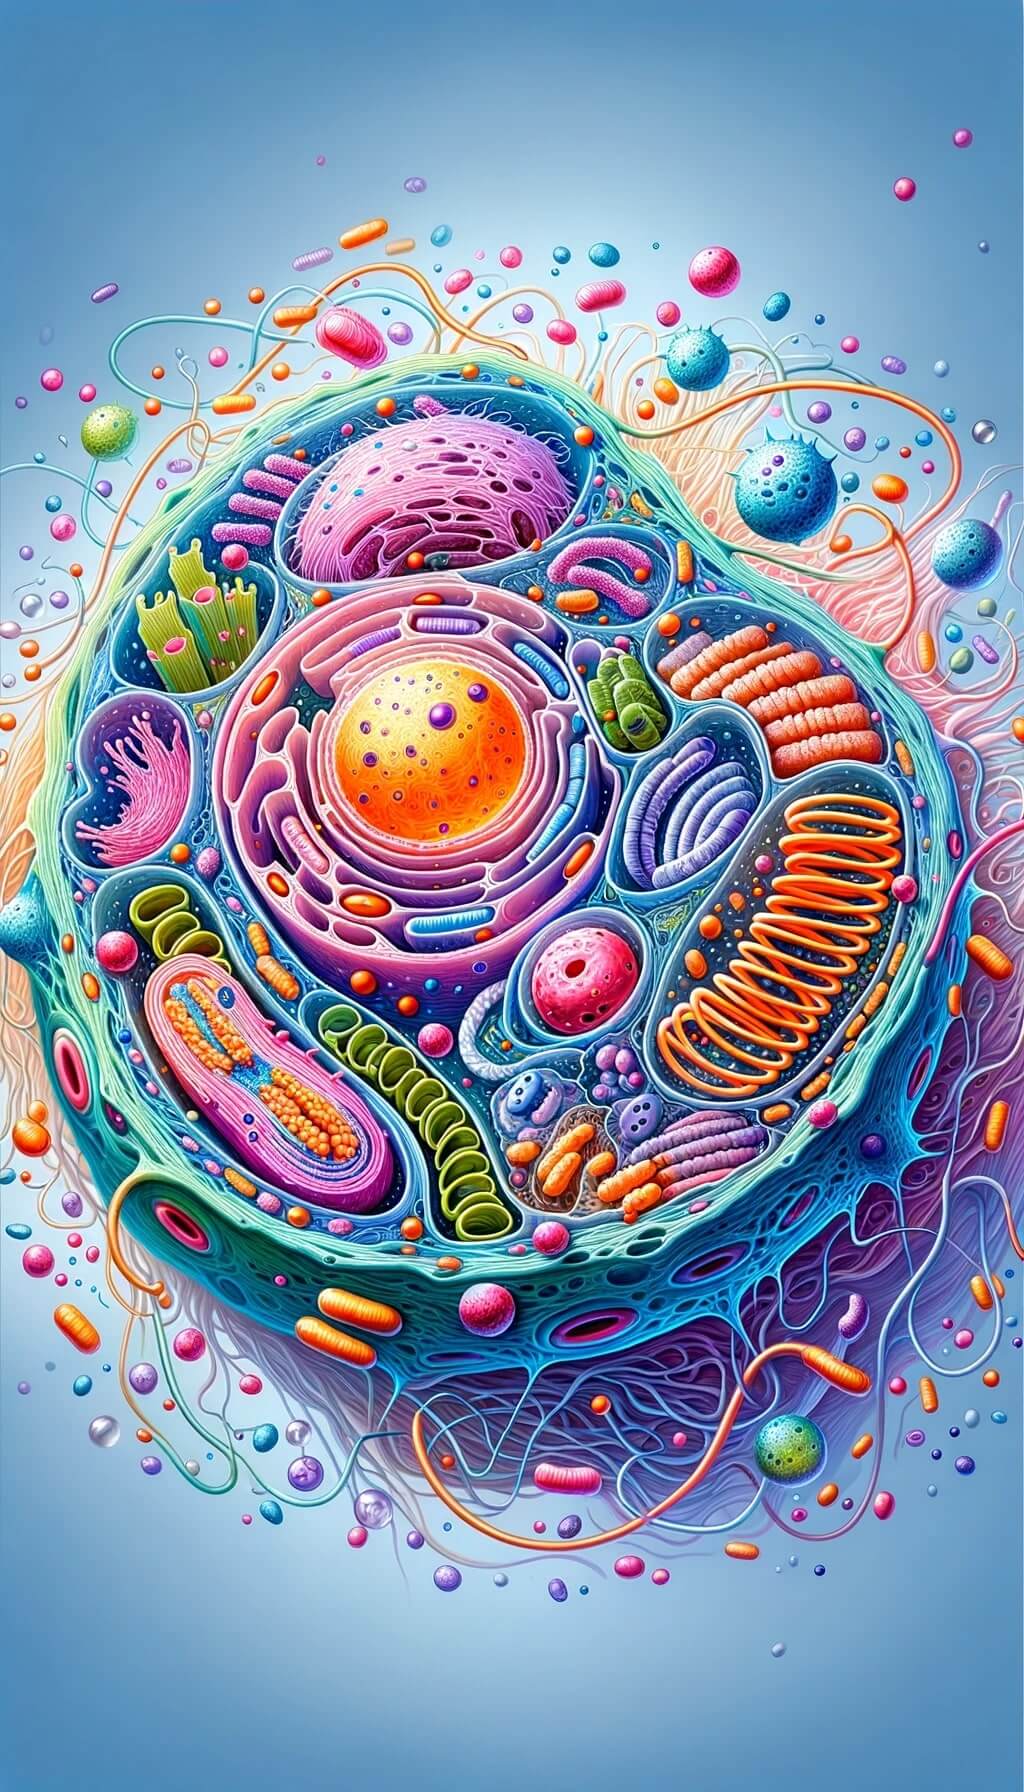 Ilustración de una estructura celular ampliada con orgánulos como el núcleo, las mitocondrias y los ribosomas. Los colores vibrantes resaltan los diferentes